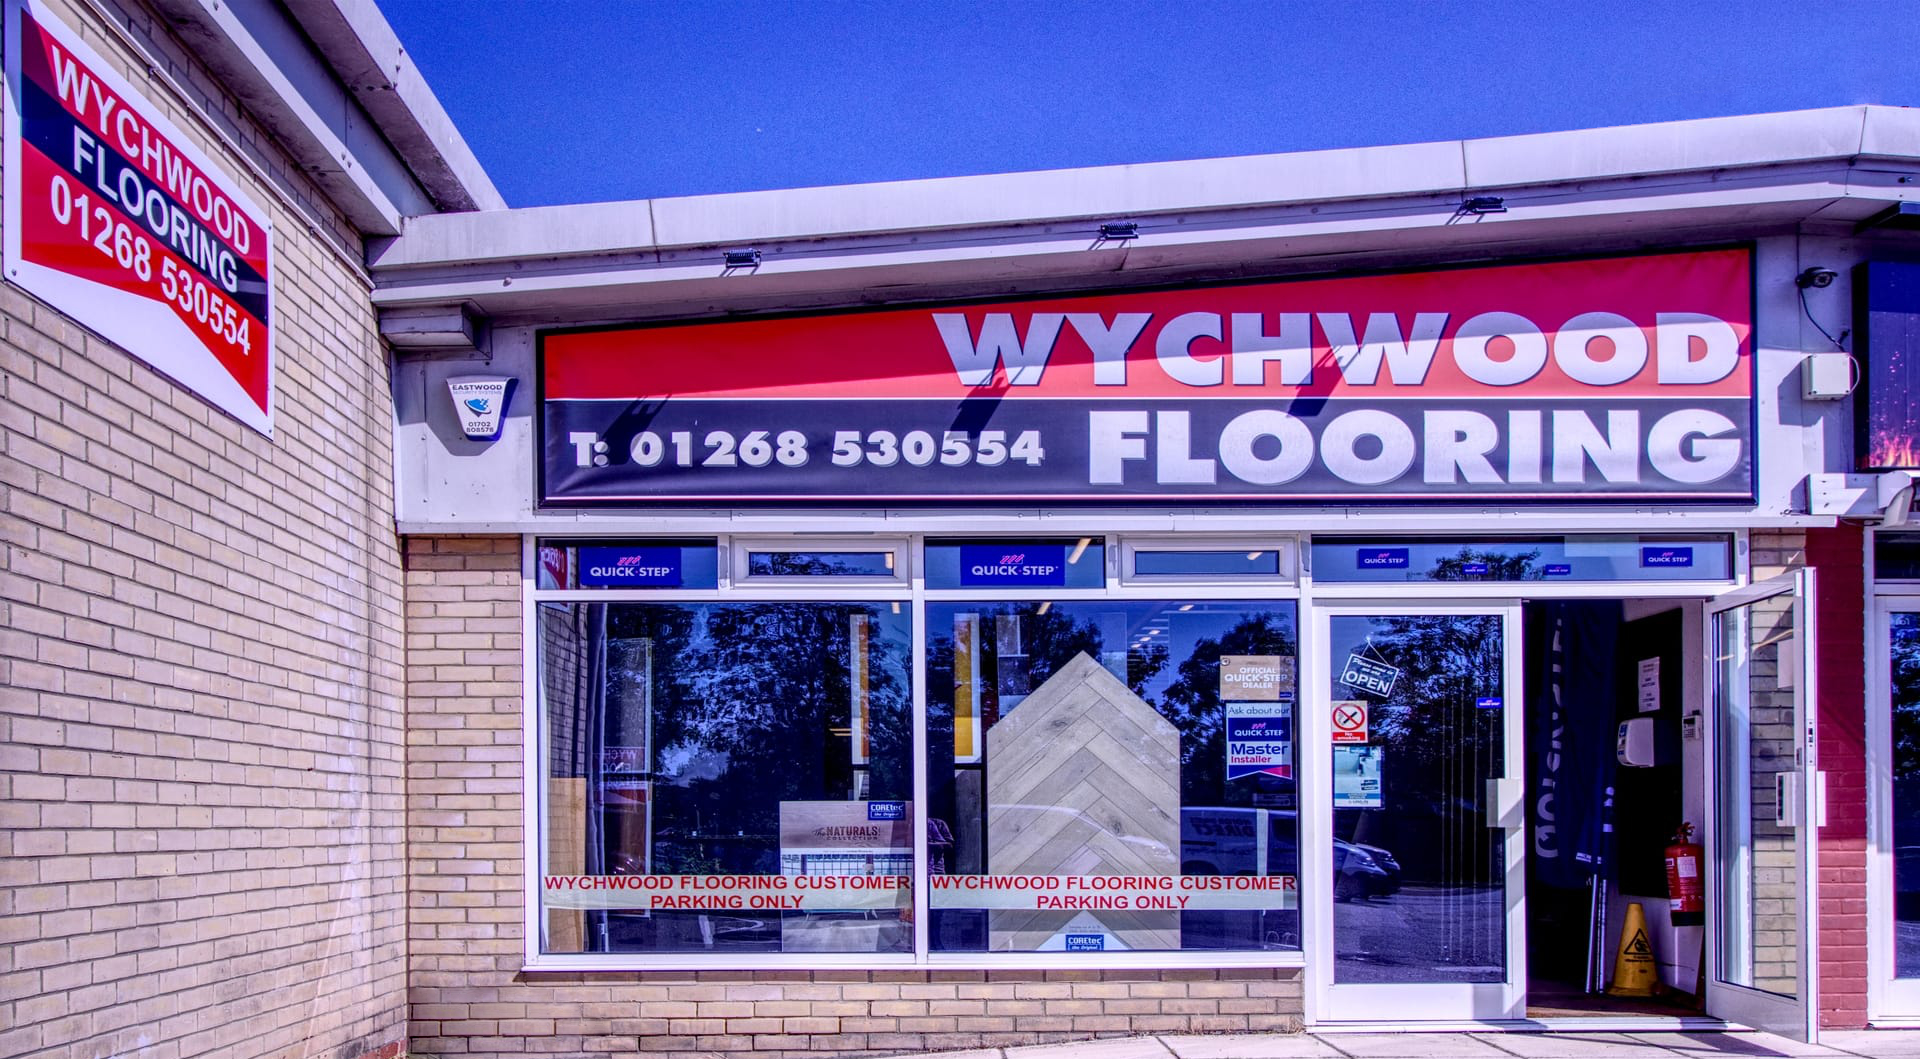 About Wychwood Flooring